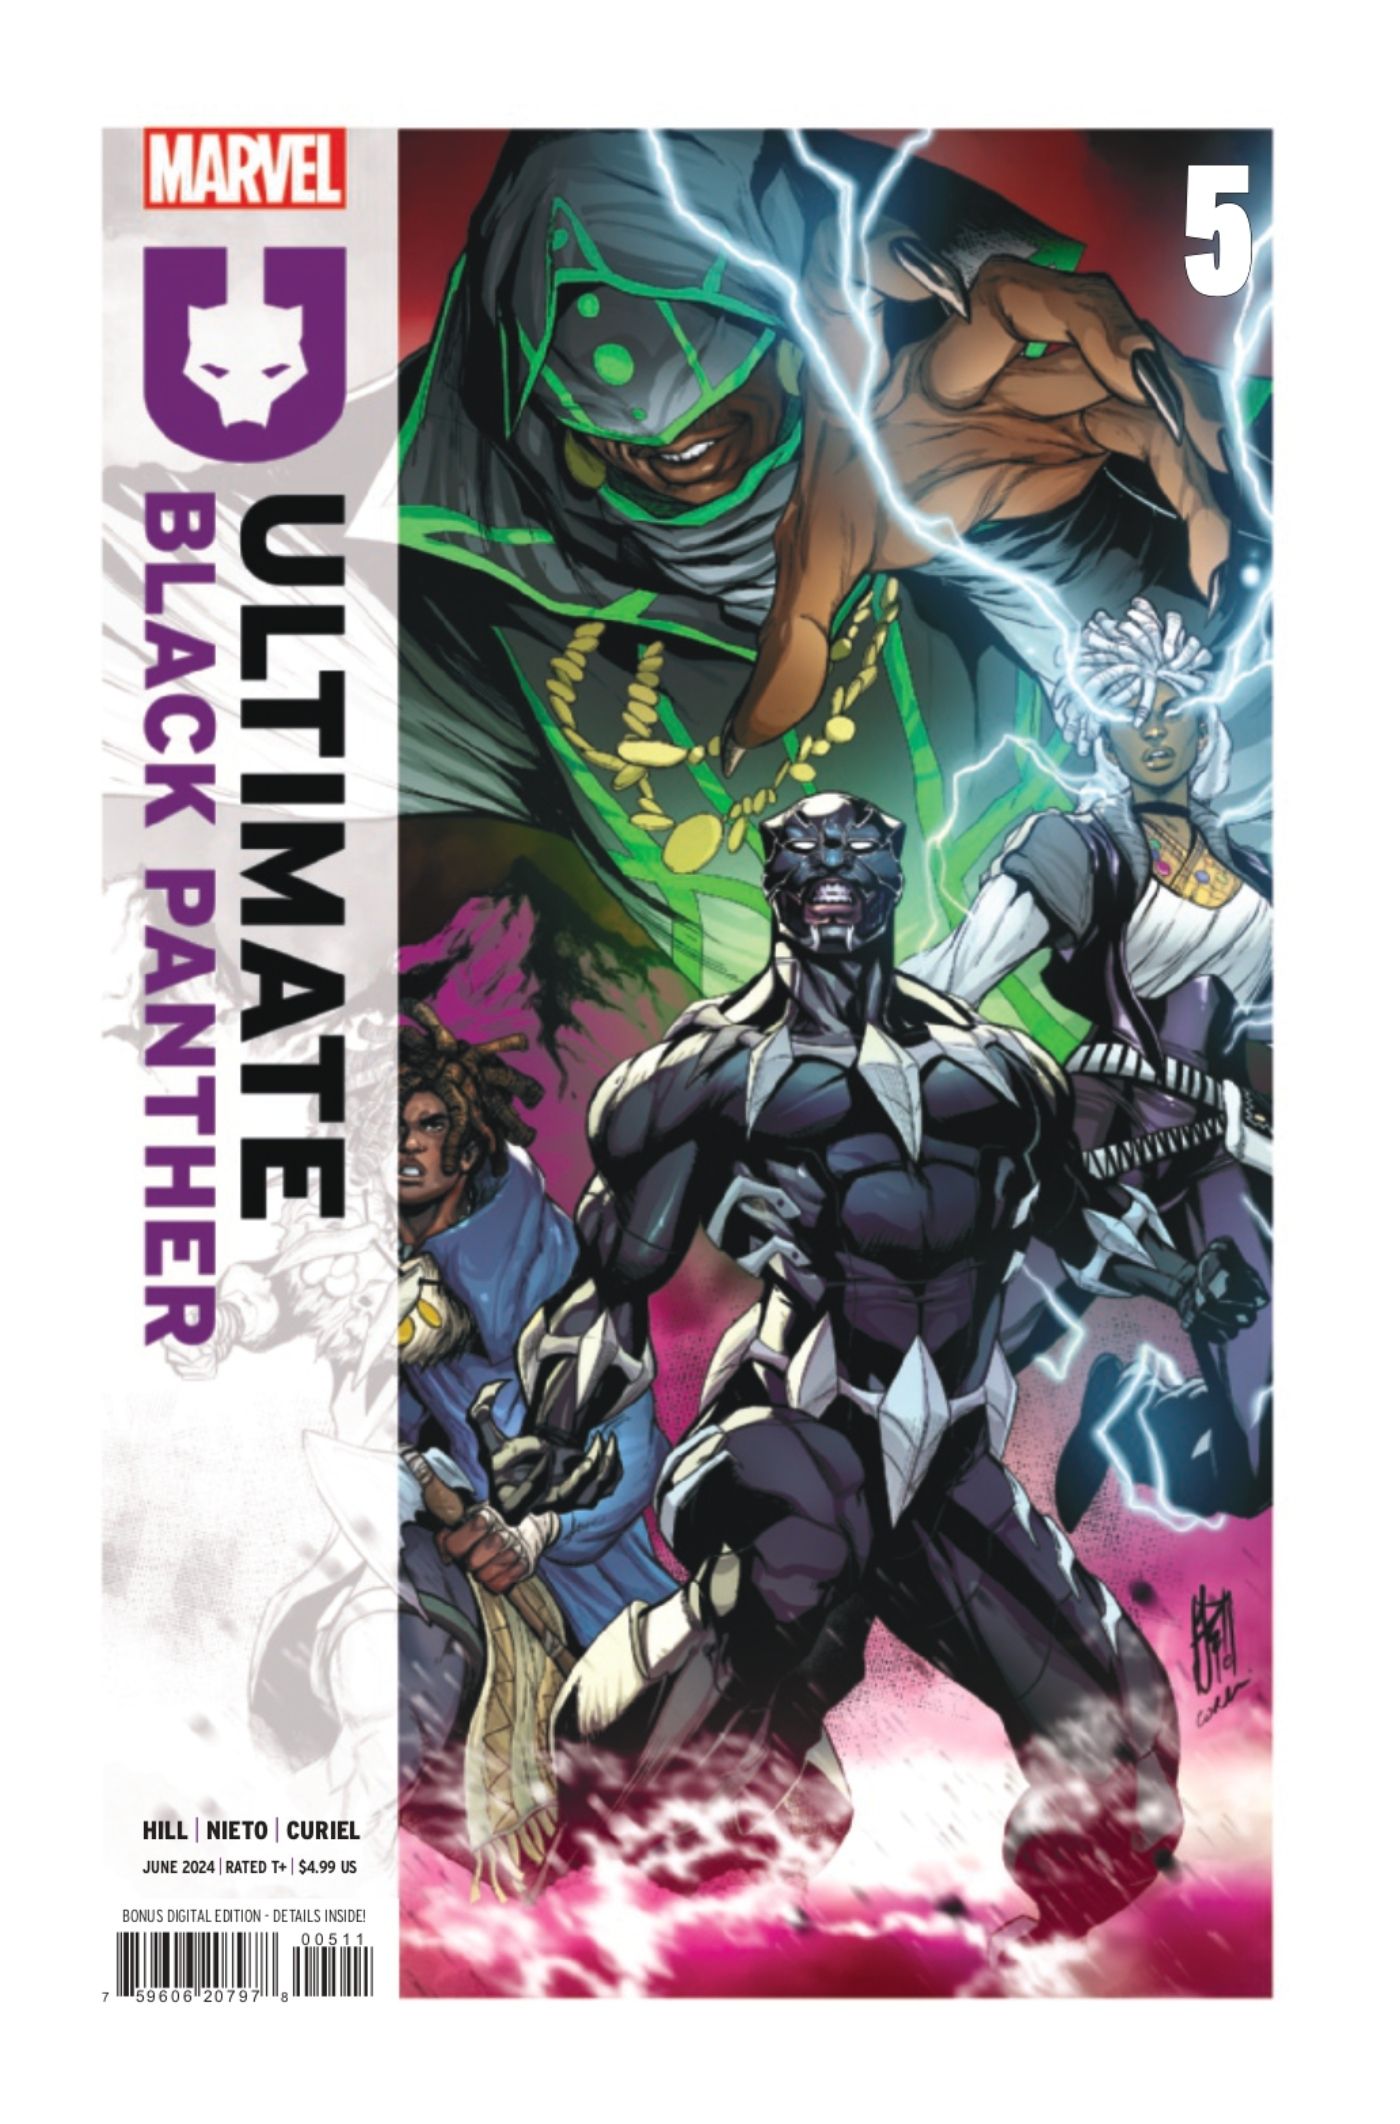 Capa definitiva de Black Panther #5 apresentando Black Panther com Killmonger e Storm.